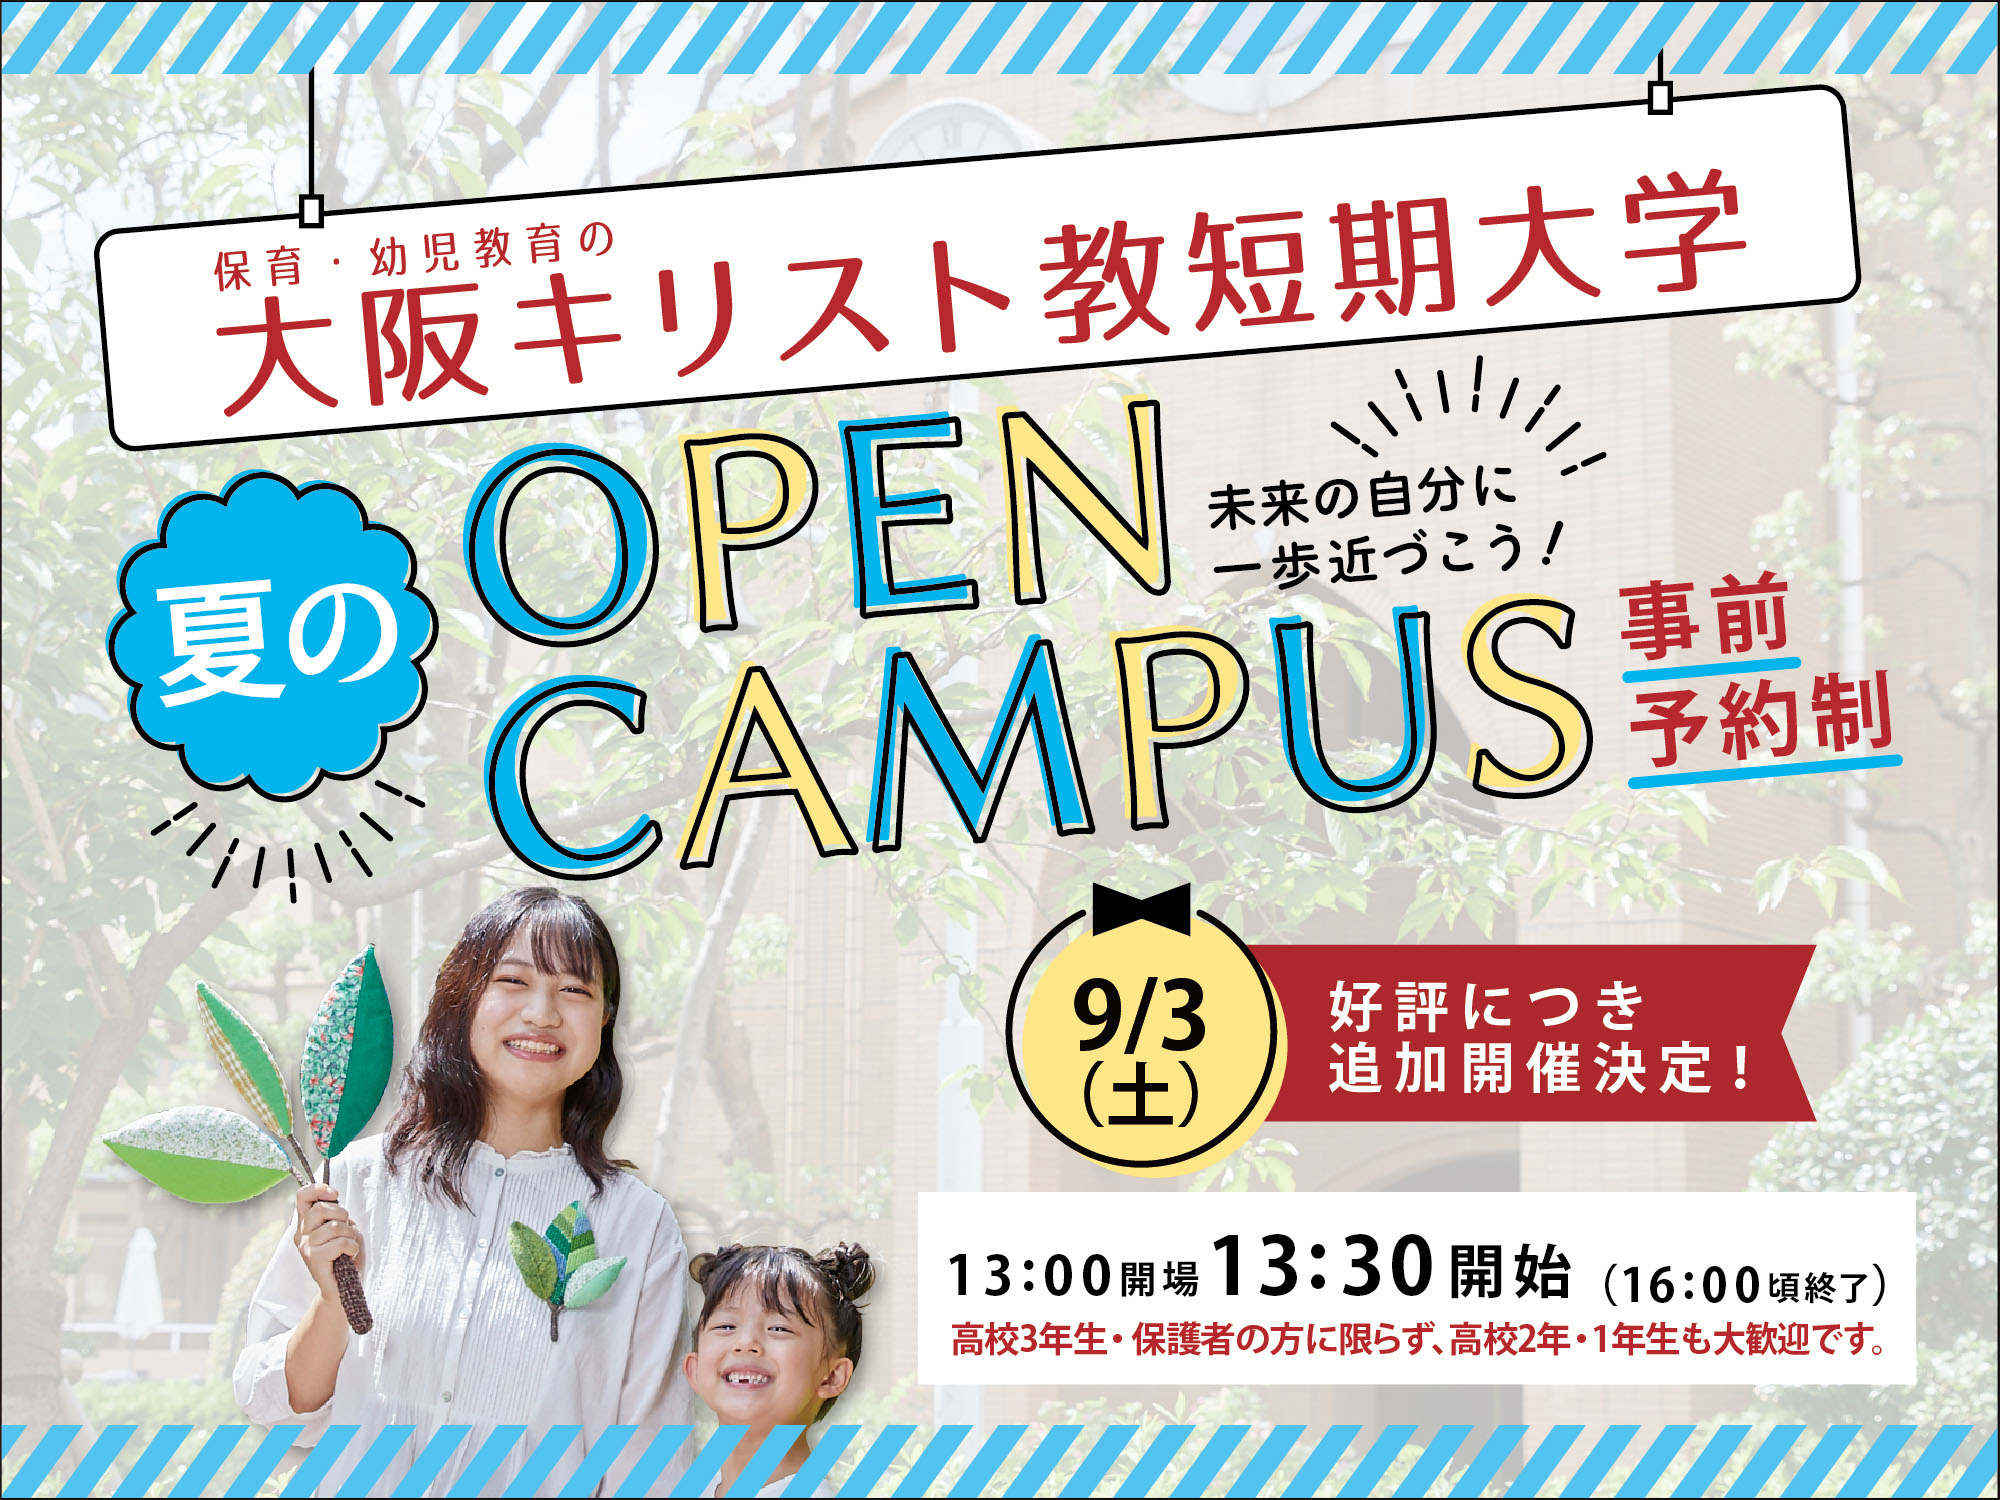 大阪キリスト教短期大学 夏のOPEN CAMPUS